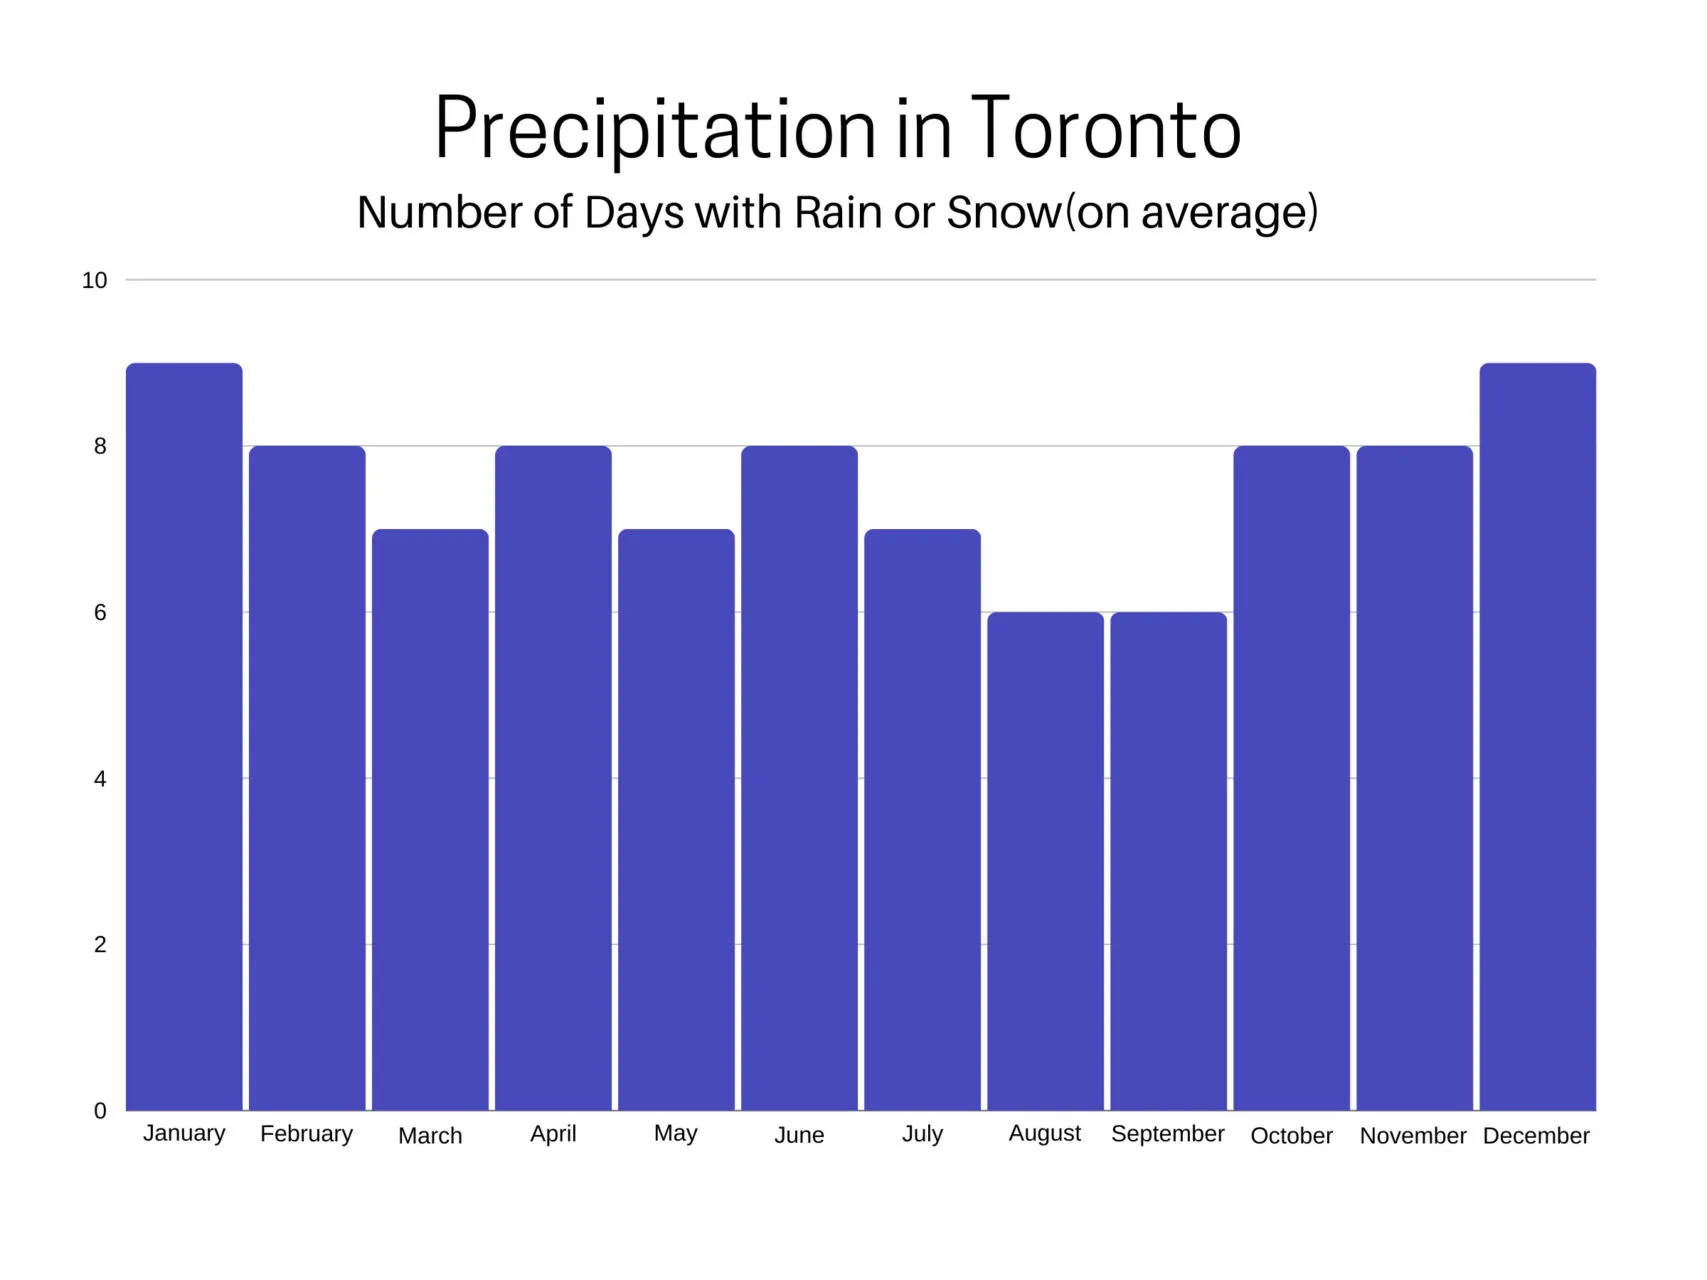 Annual precipitation in Toronto.